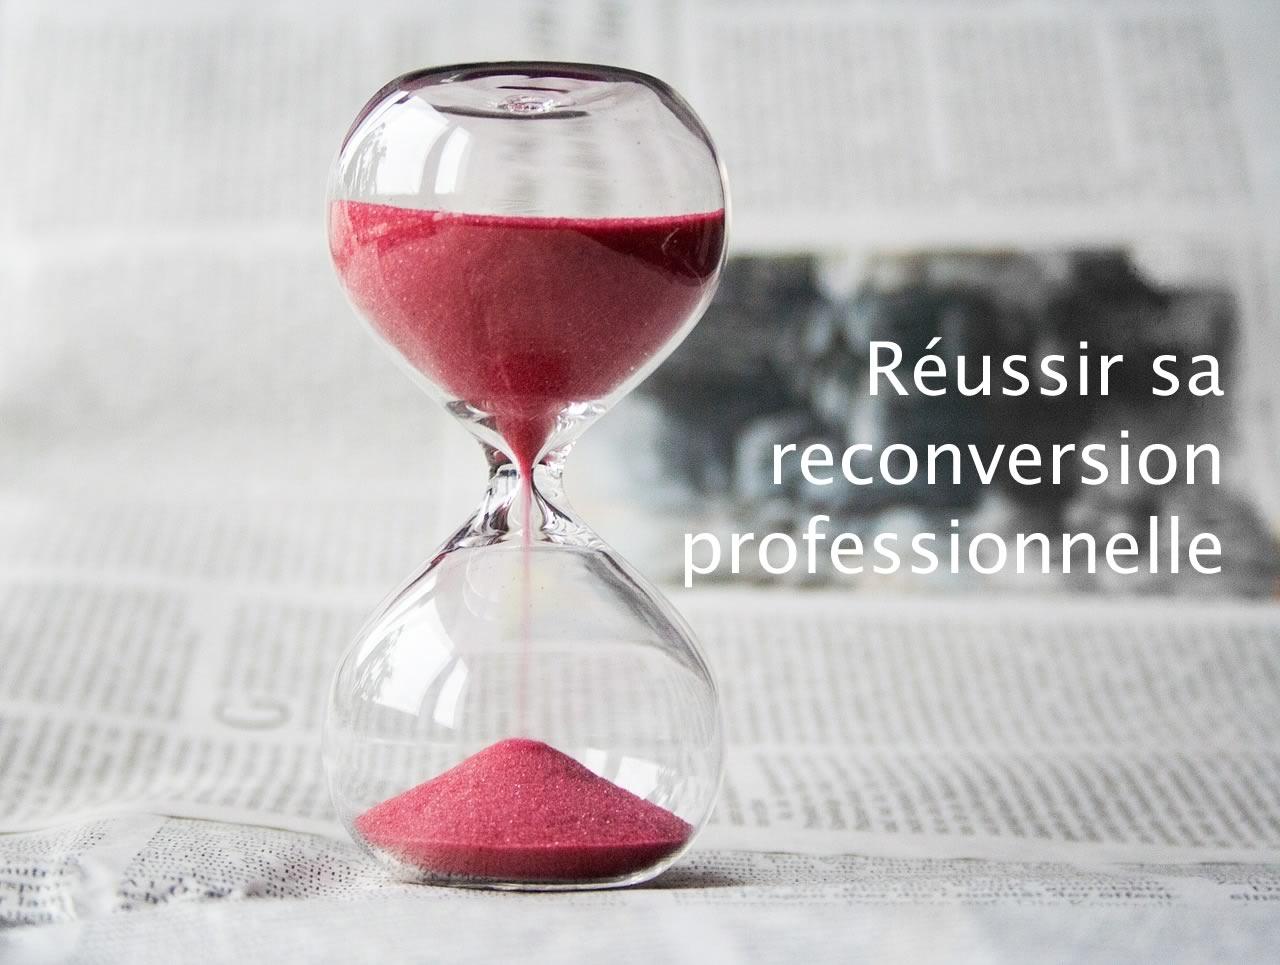 Le temps passe : il est peut-être temps de changer de métier et penser à une reconversion professionnelle ?